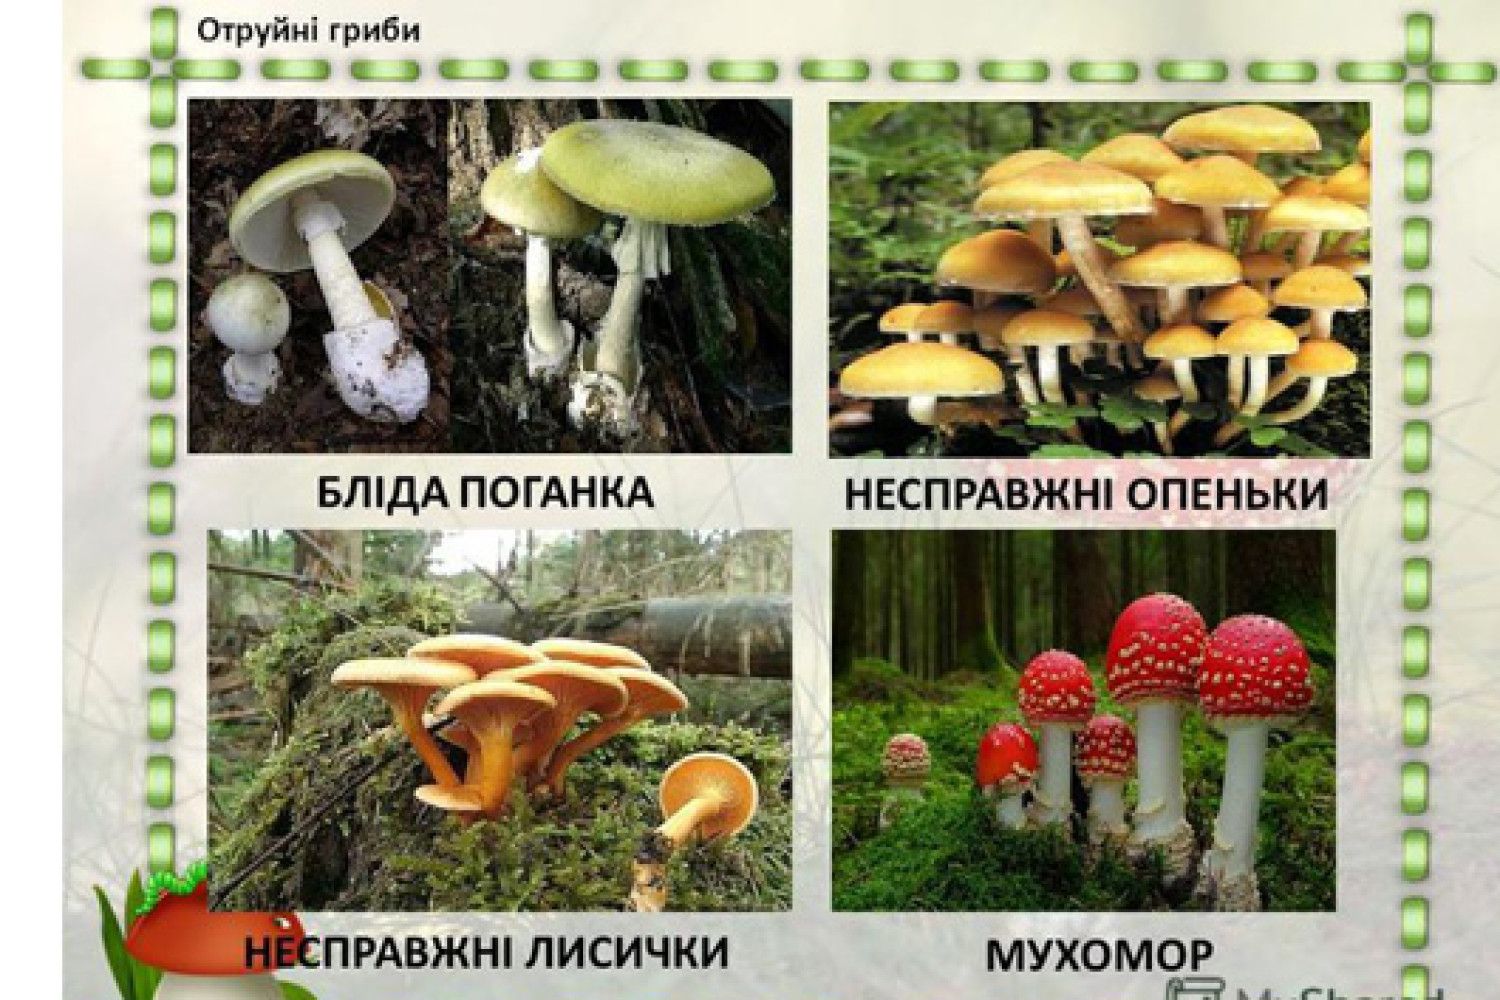 Їстівні та отруйні гриби